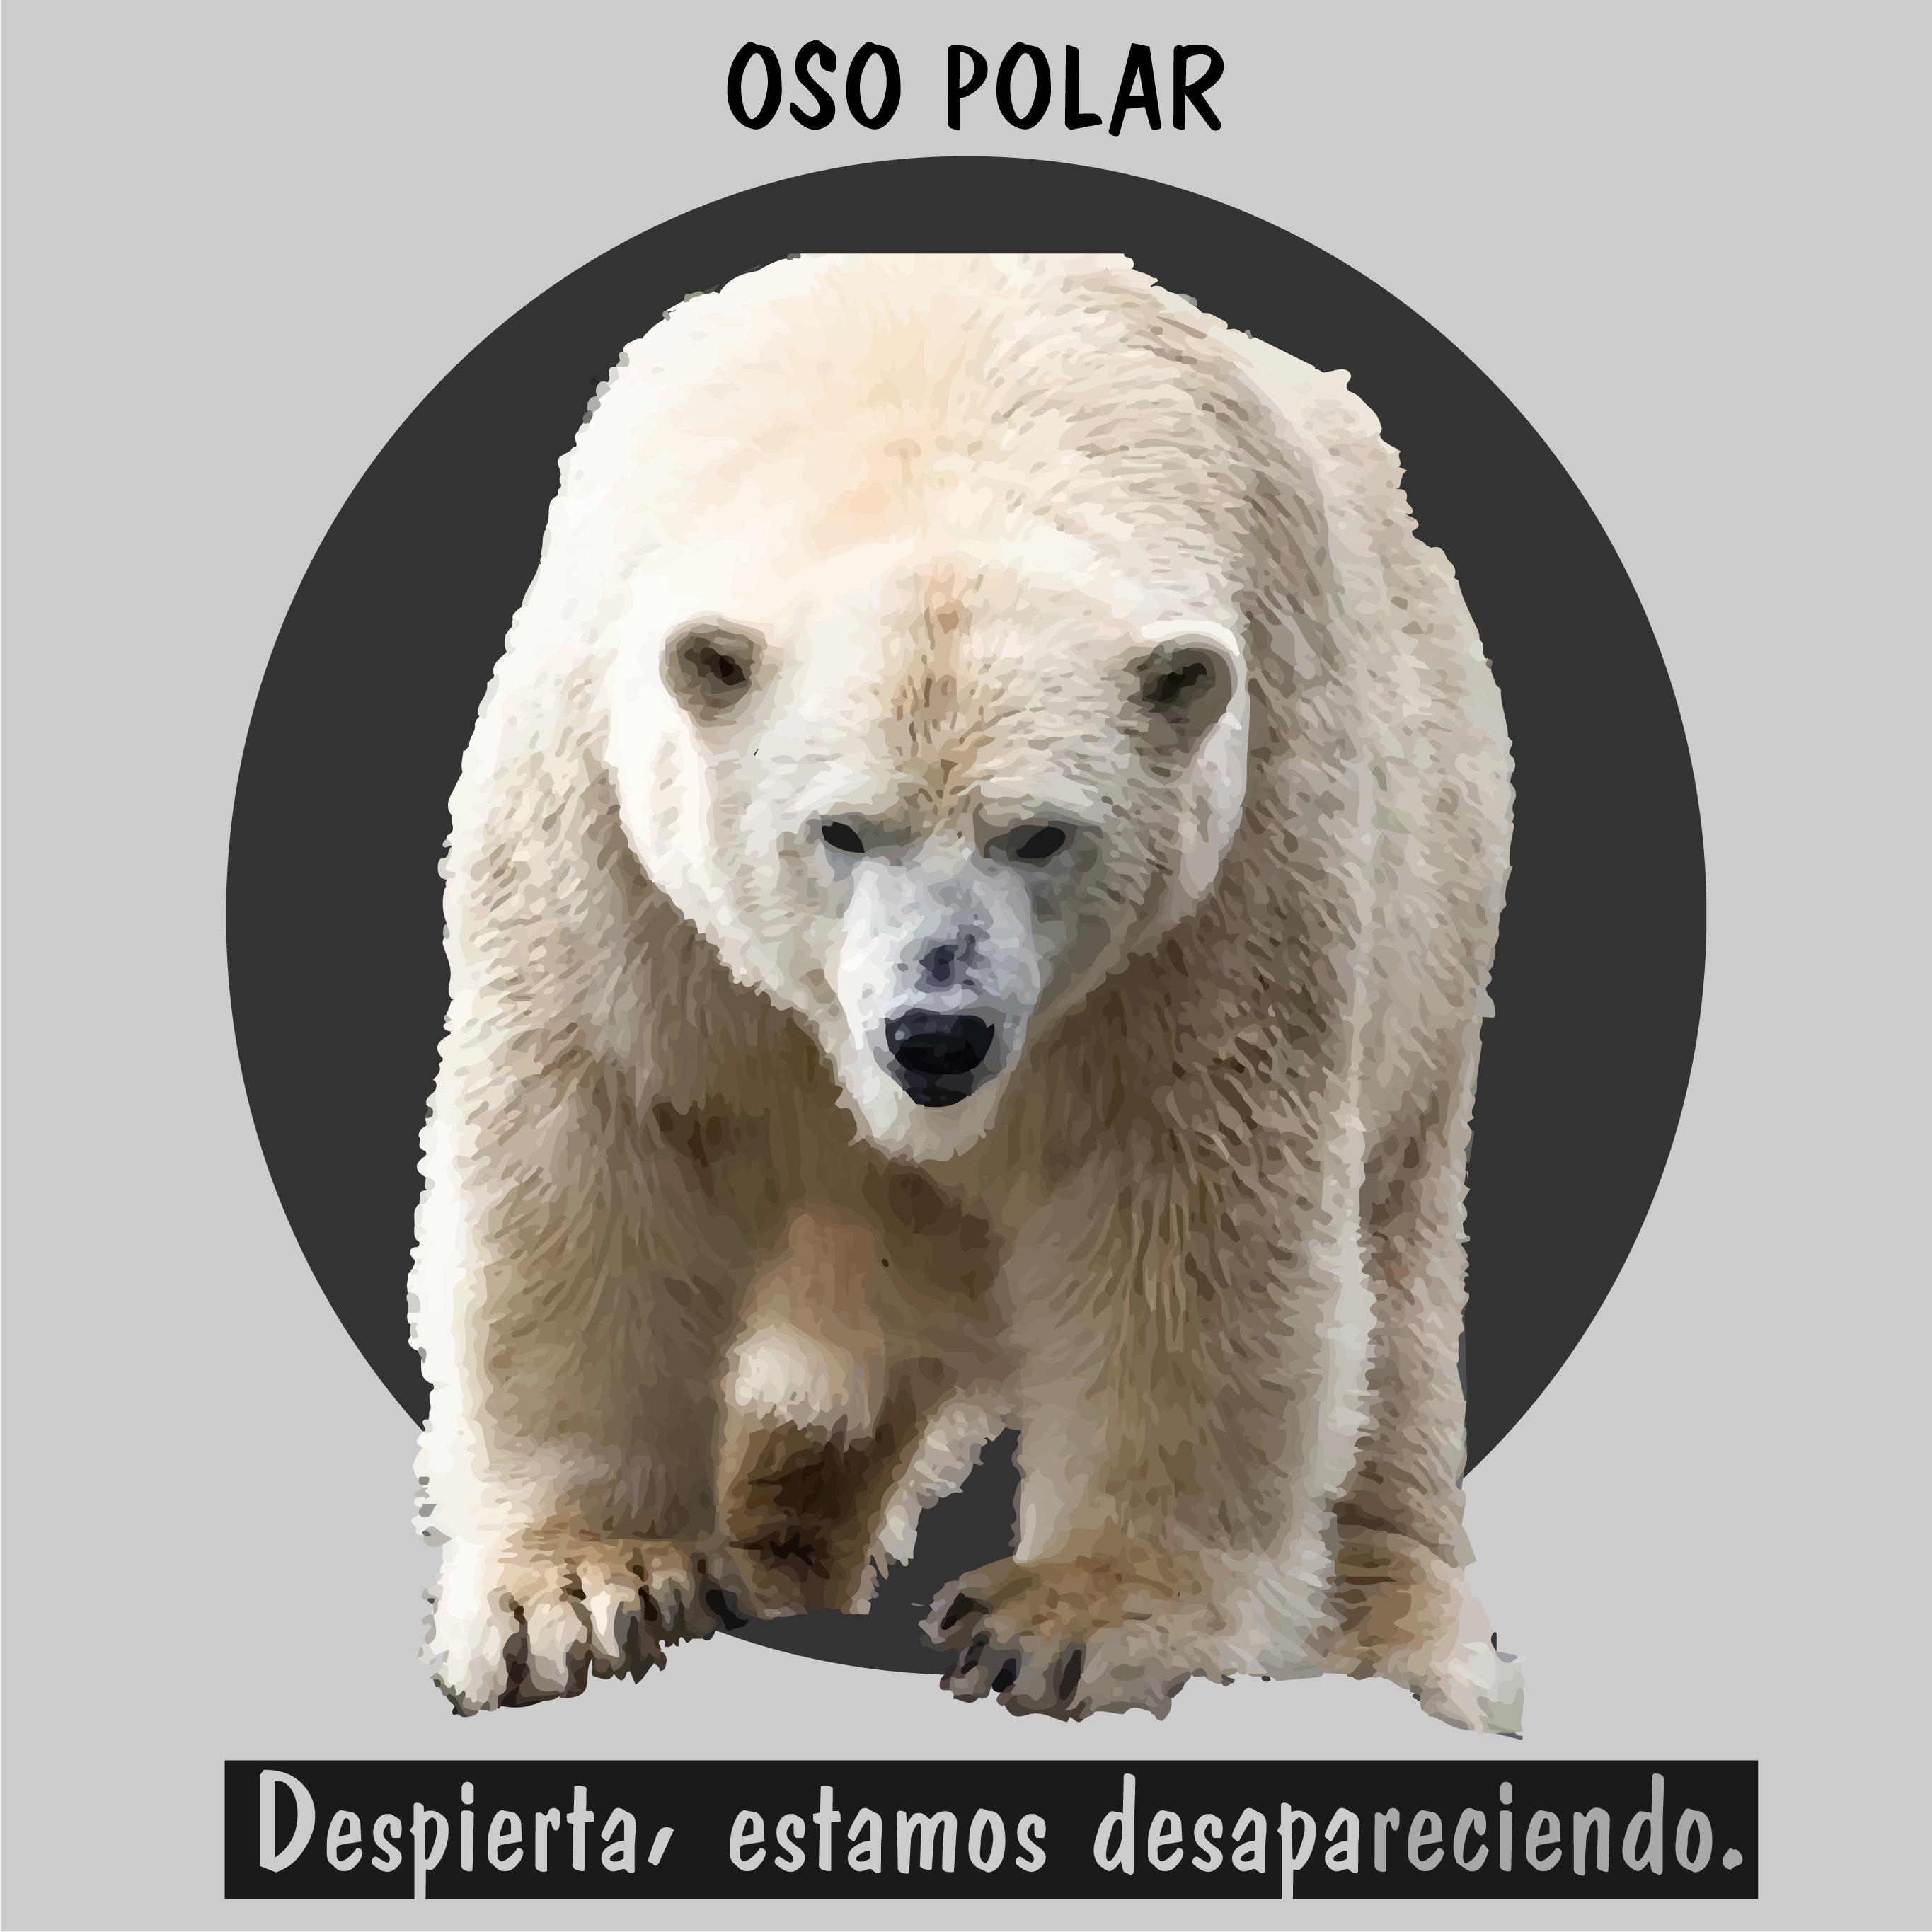 oso polar en extinción